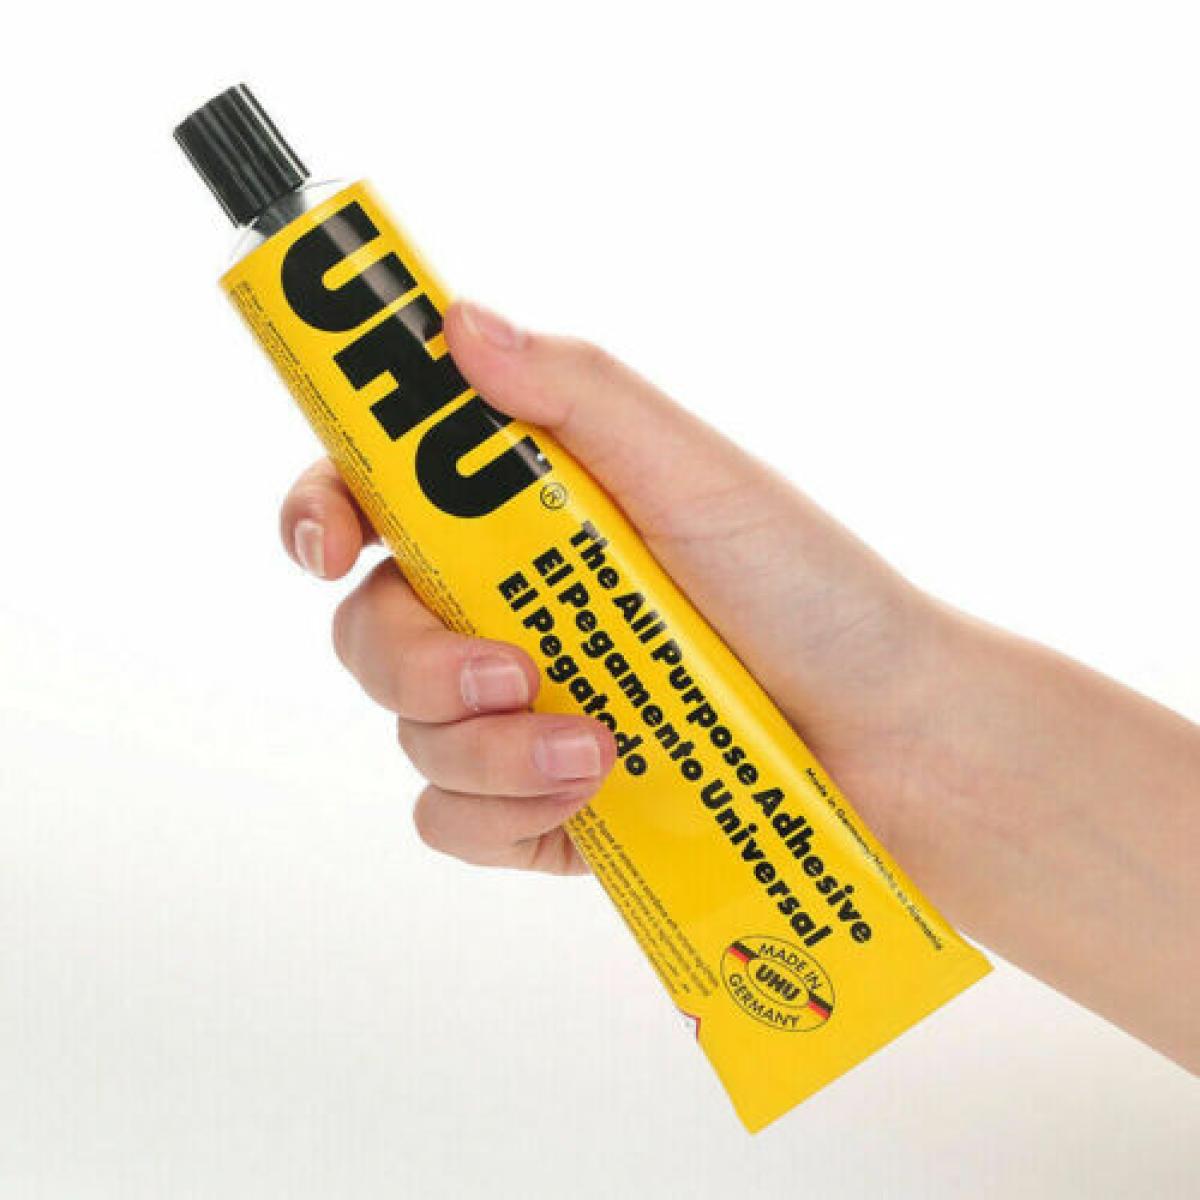 Uhu All Purpose Adhesive Glue - 60ml, Vanaplus